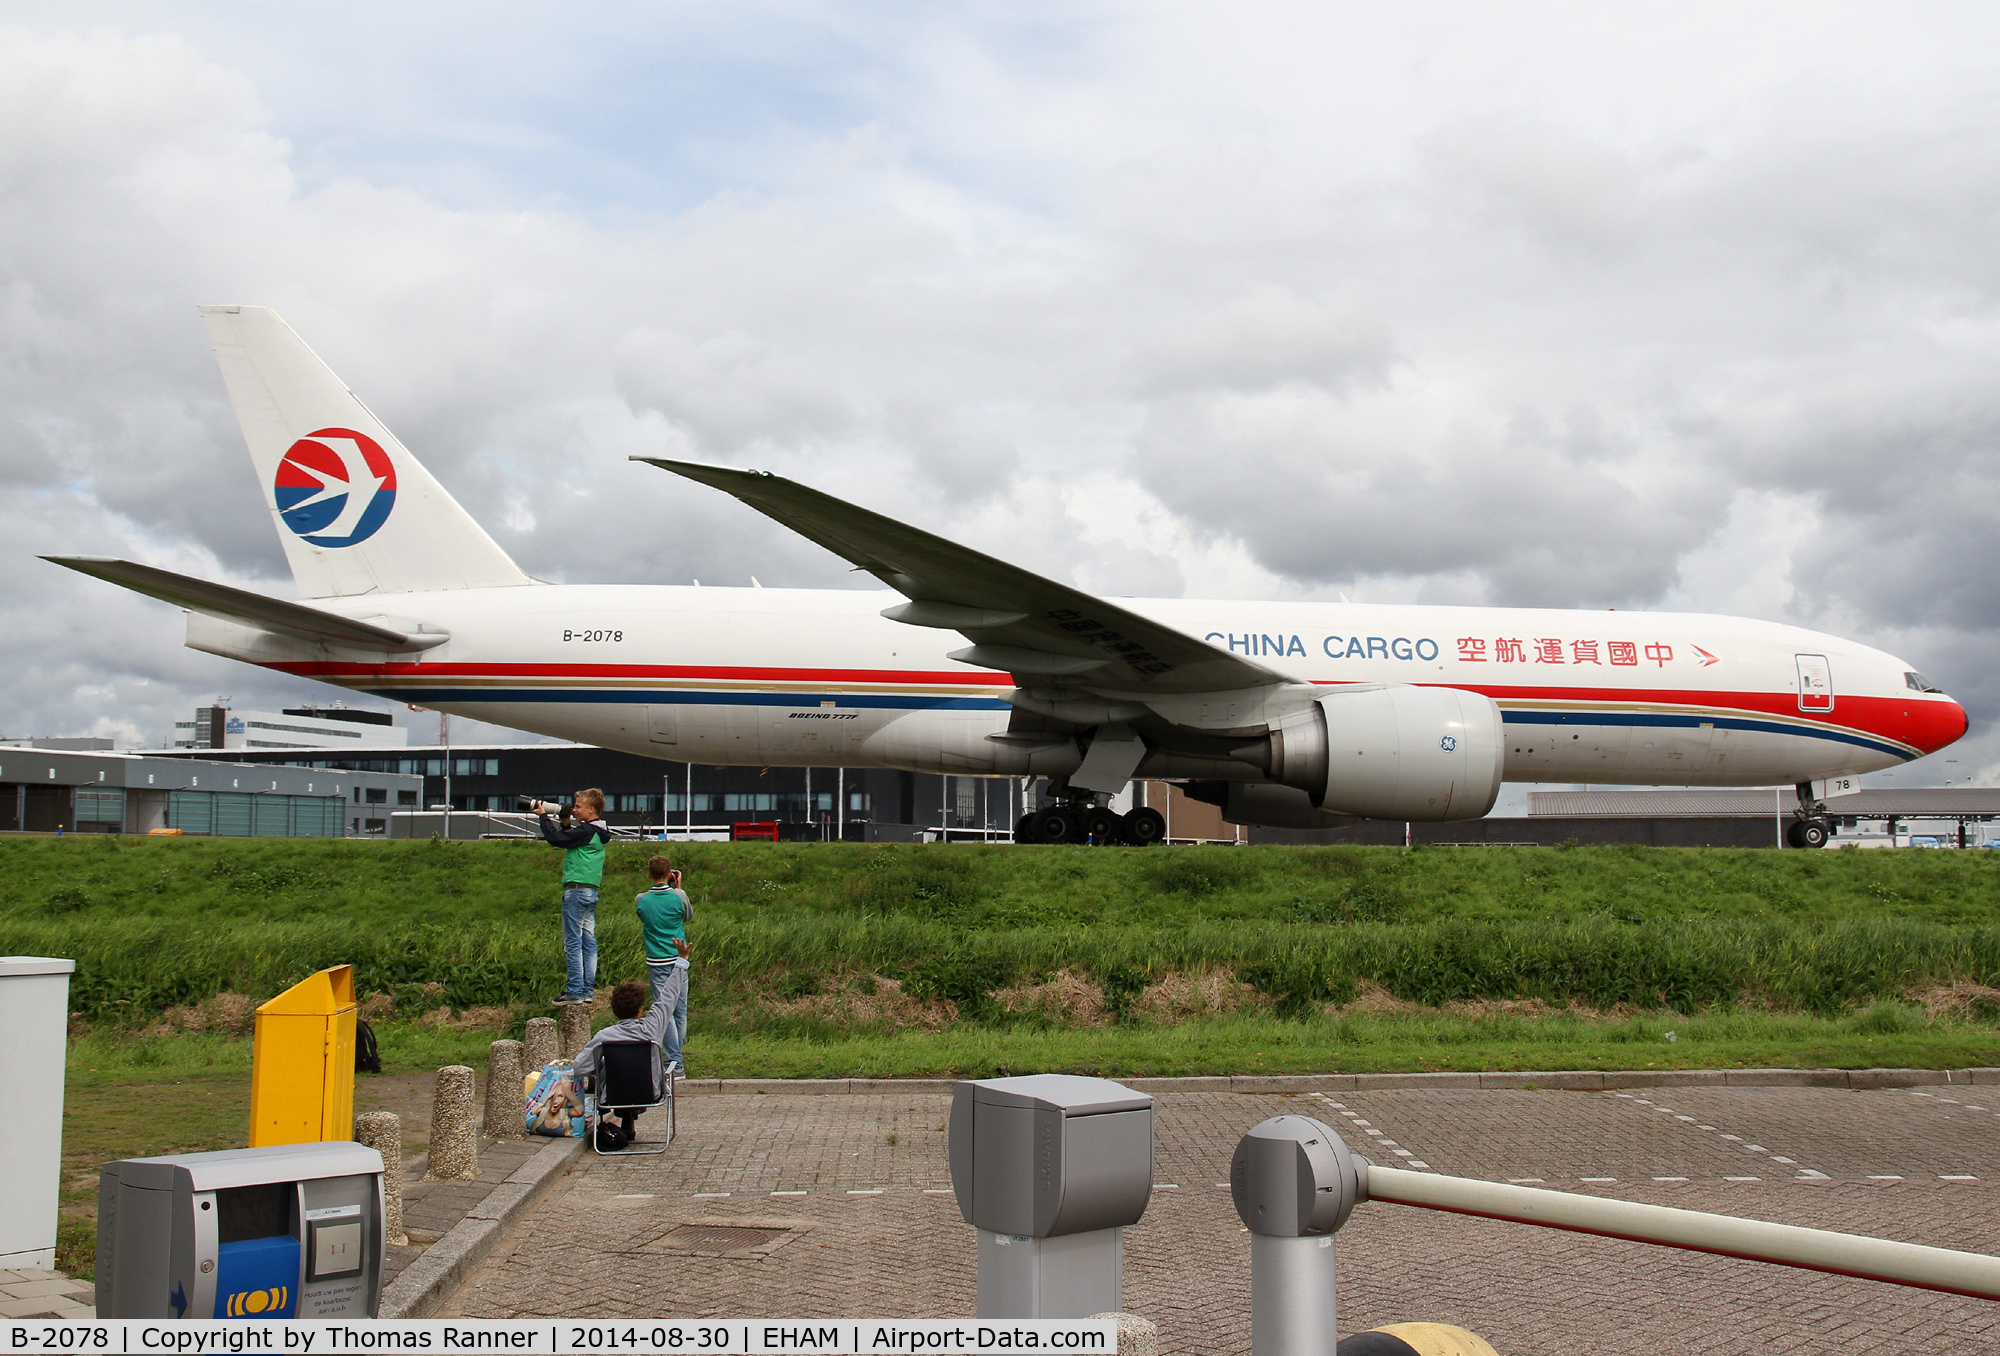 B-2078, 2010 Boeing 777-F6N C/N 37714, China Cargo B777